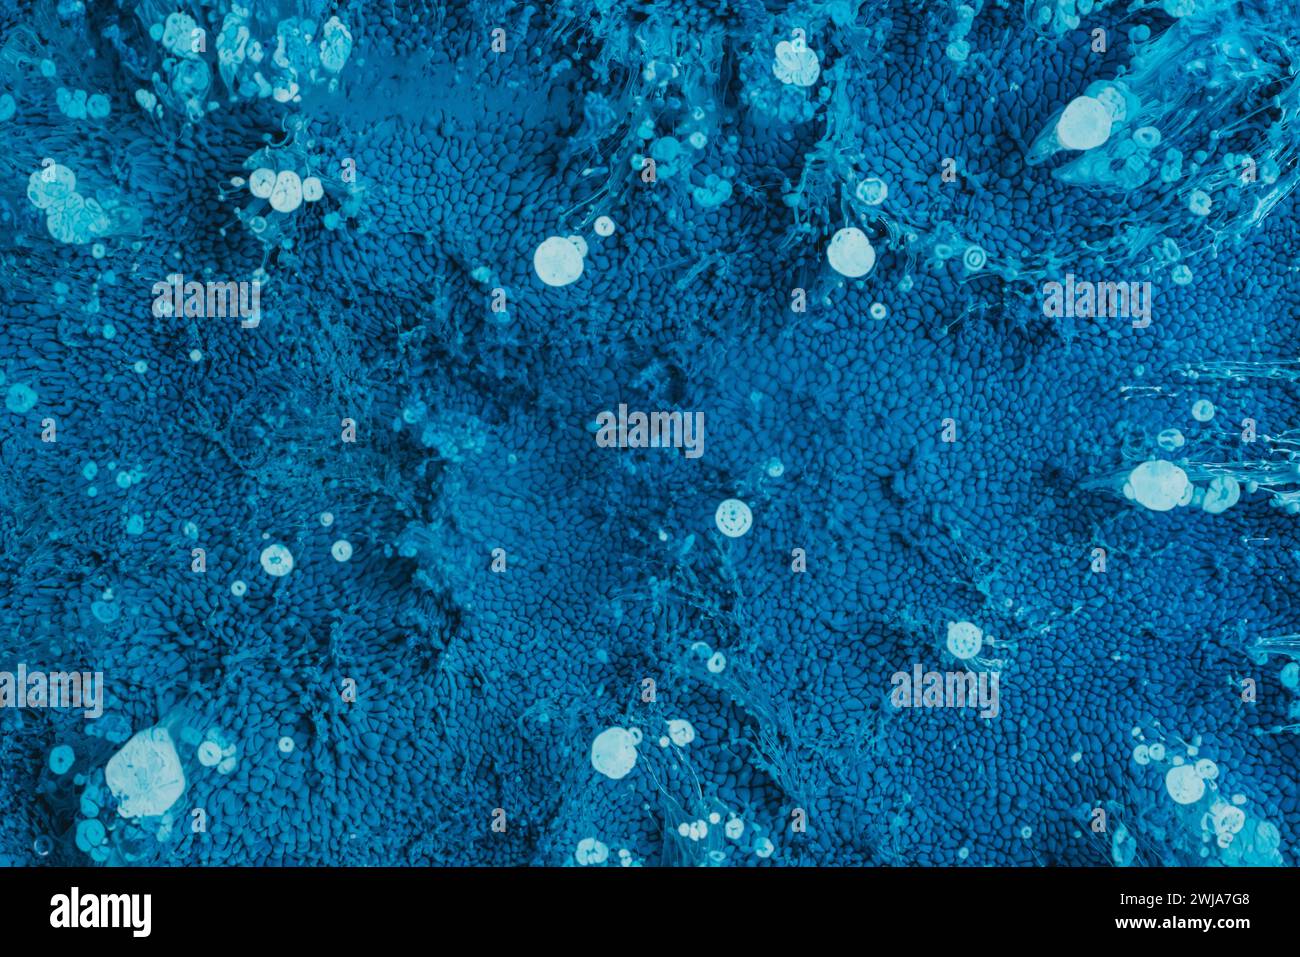 Eine abstrakte Nahaufnahme, die die komplizierten Details blauer Texturen und Blasenformationen festlegt Stockfoto